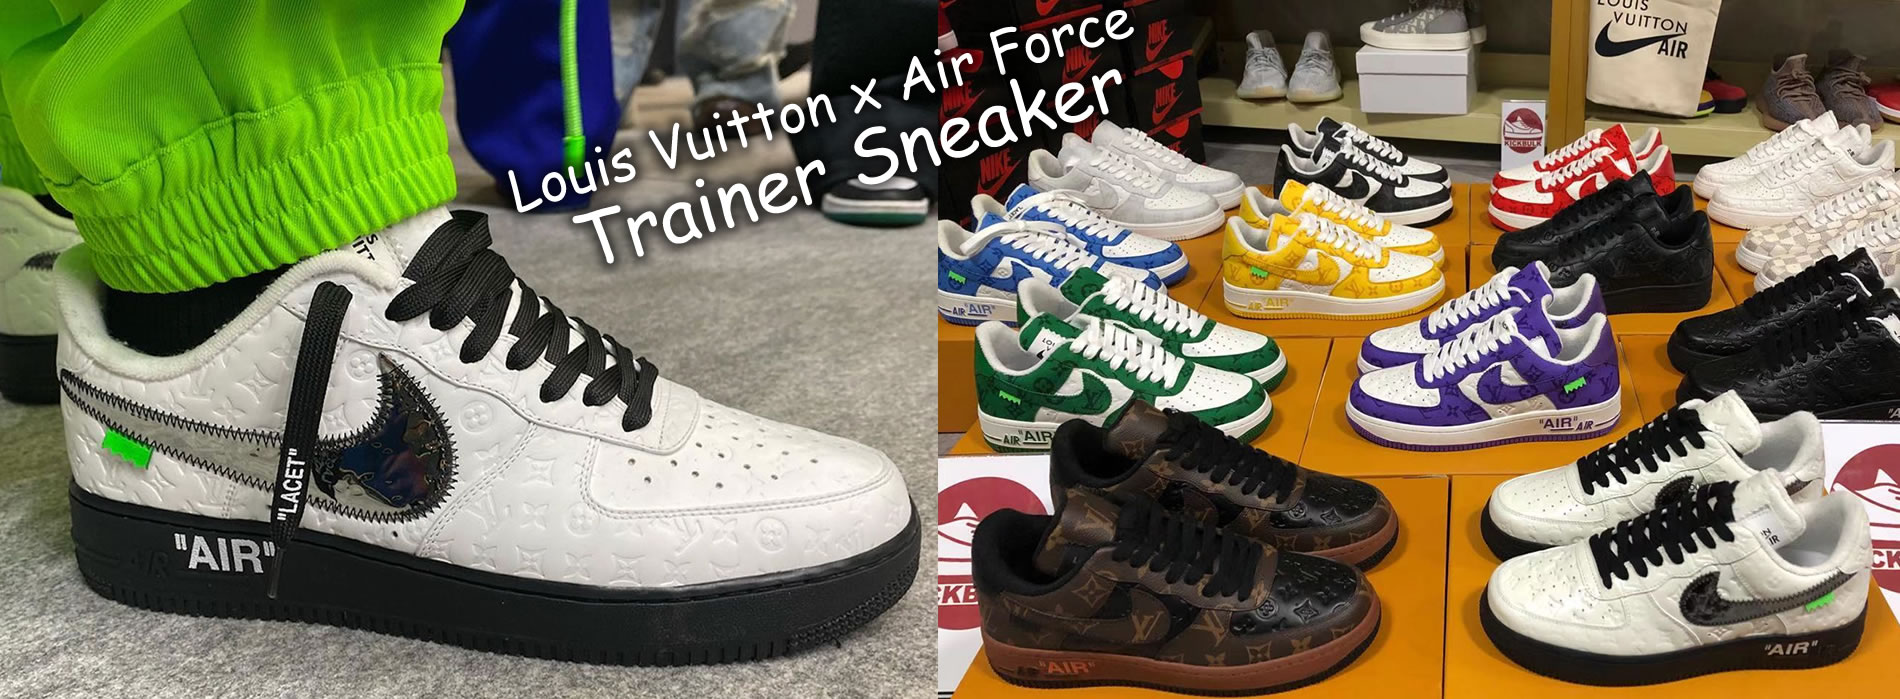 Louis Vuitton x Air Force 1 Trainer STAR Sneaker